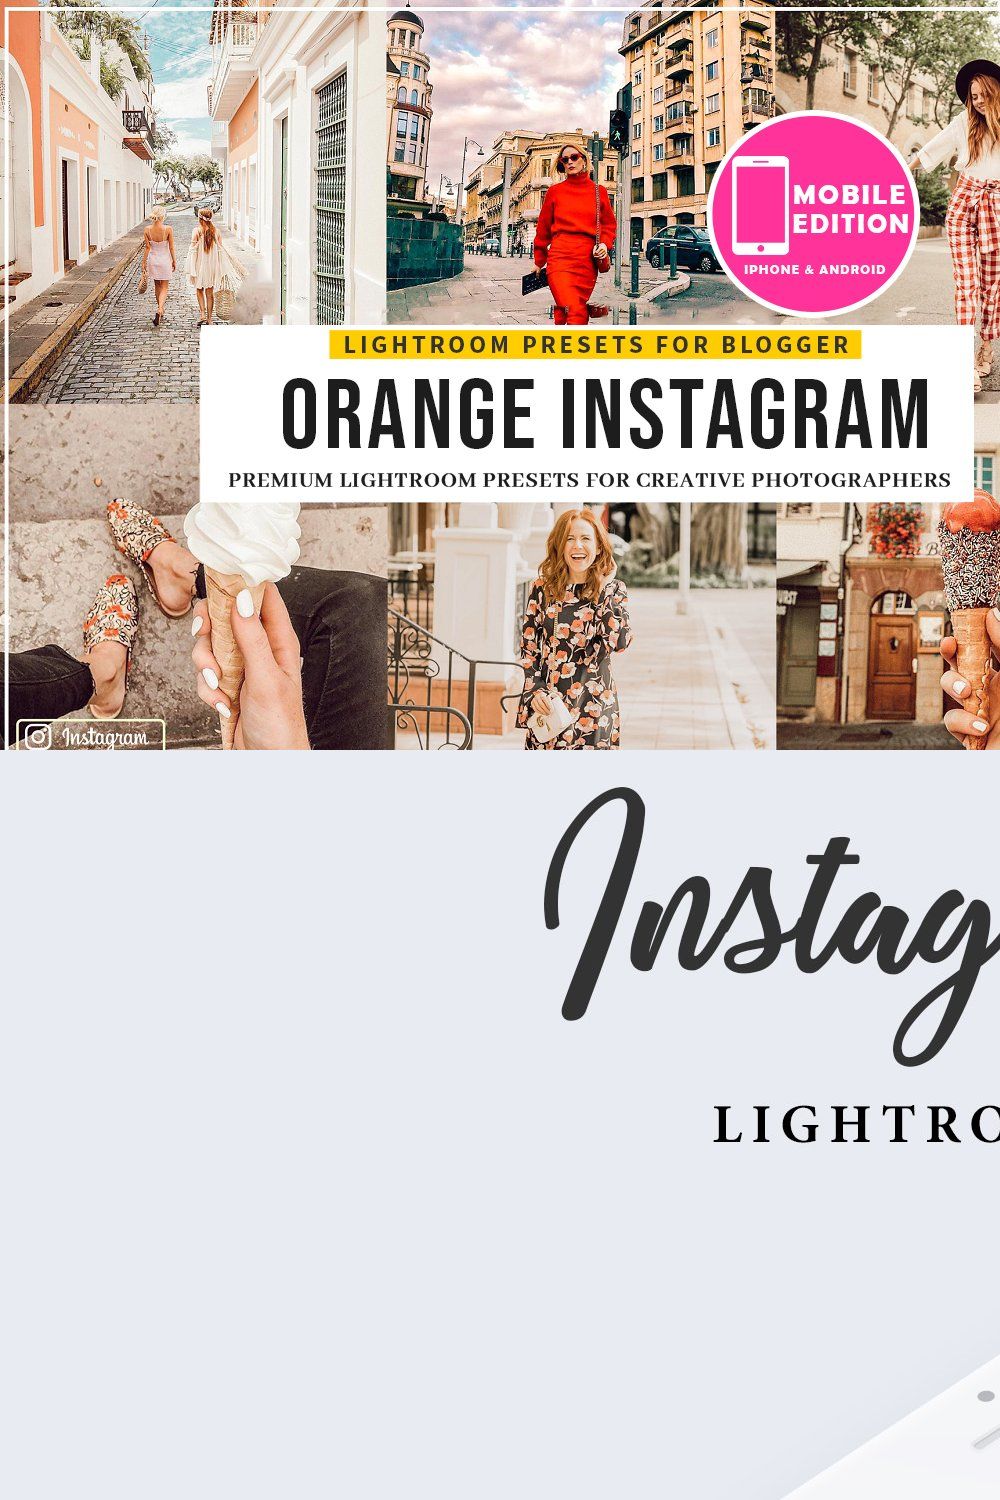 Orange Instagram Blogger Presets pinterest preview image.